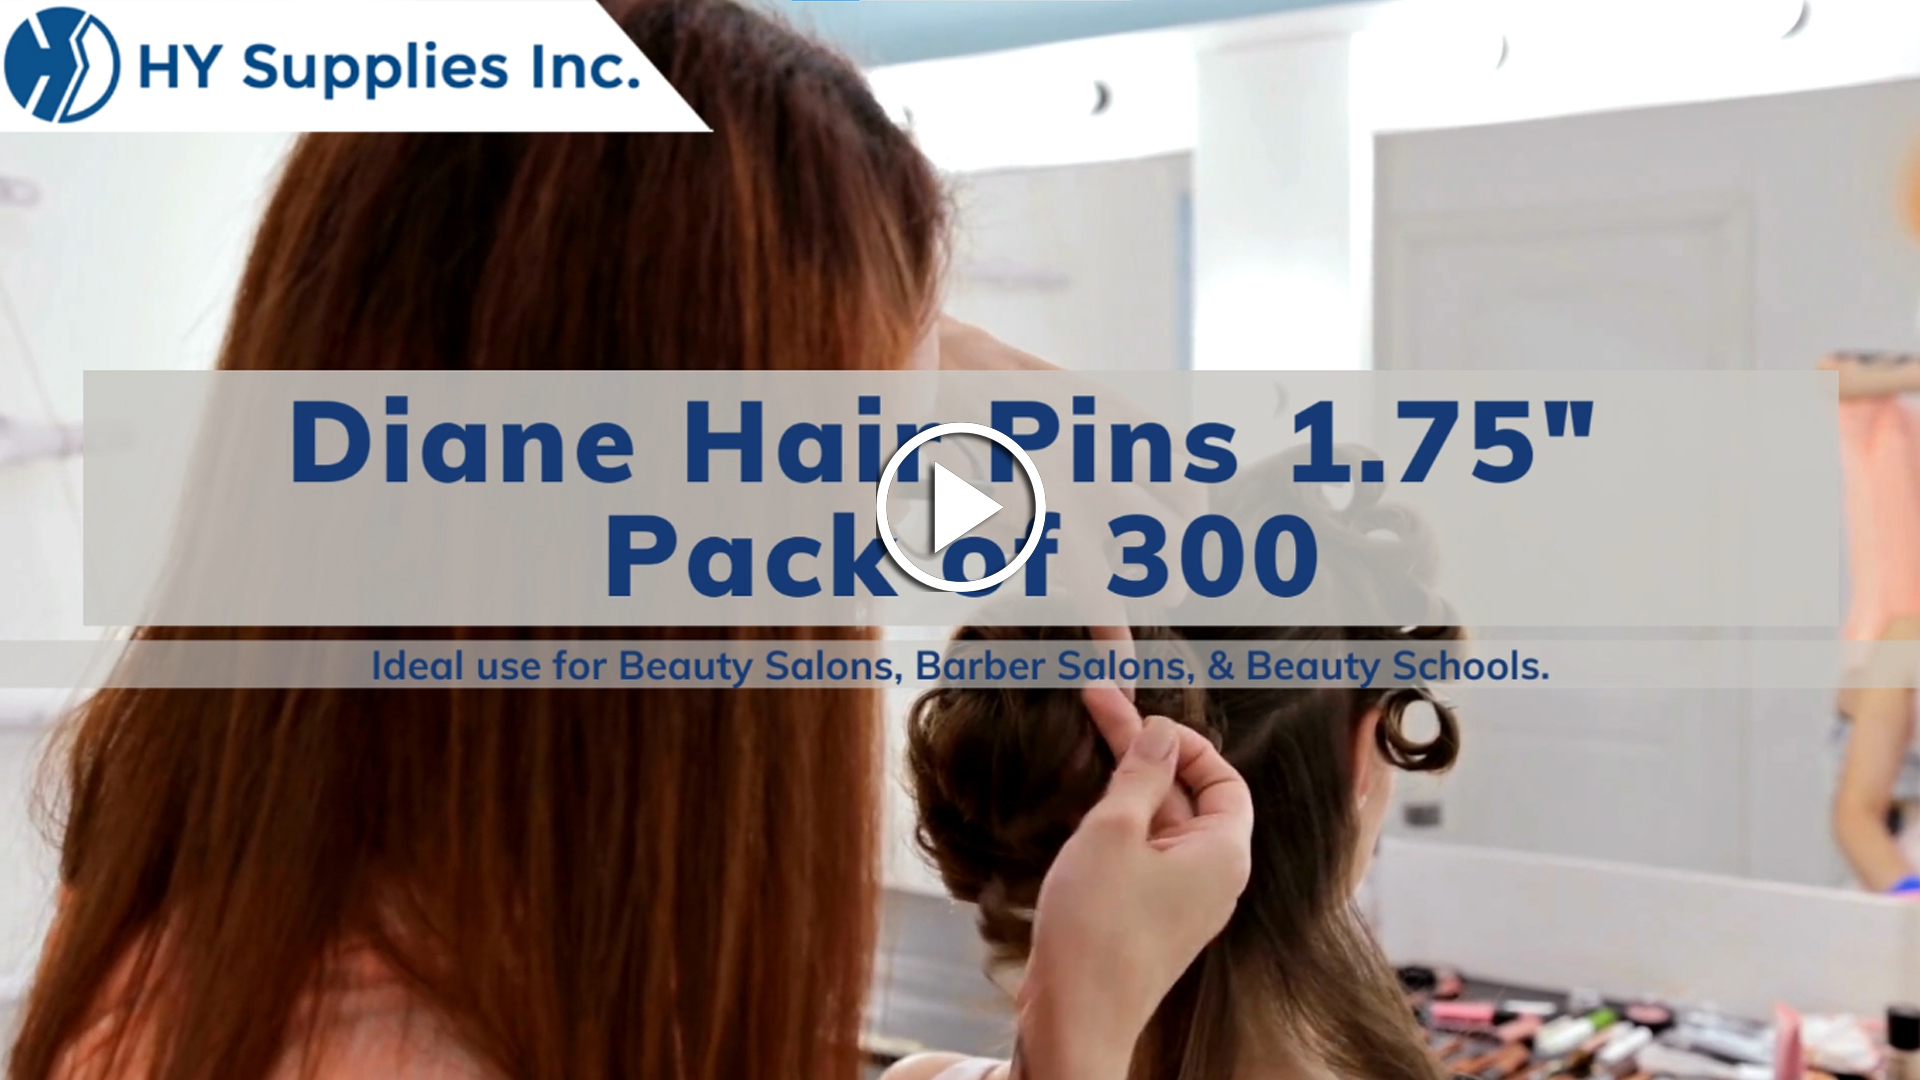 Diane Hair Pins 1.75" - Pack of 300